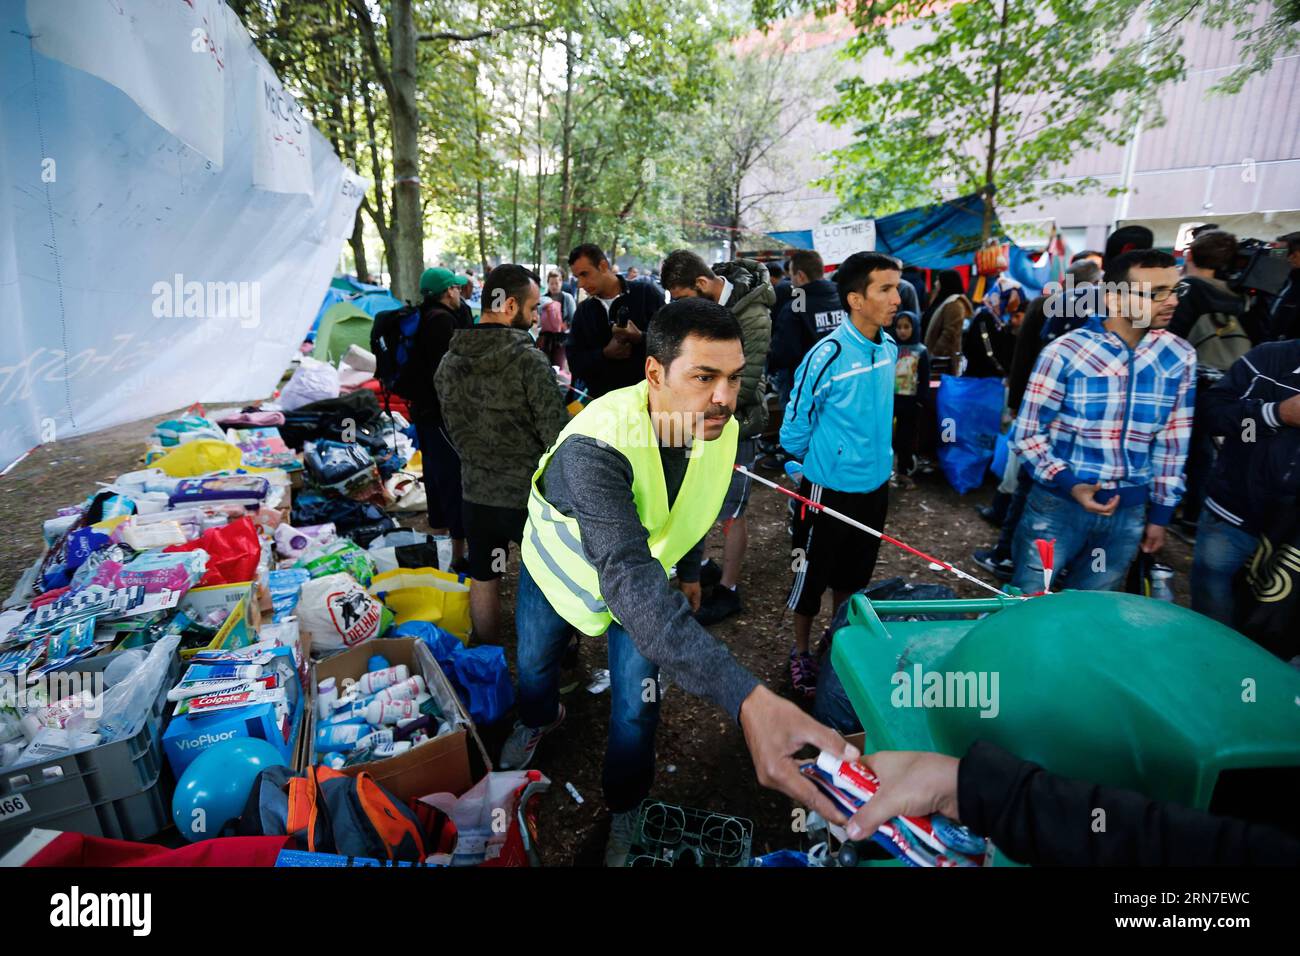 (150903) -- BRUXELLES, 3 septembre 2015 -- Un homme distribue des articles de vie à des demandeurs d'asile dans un camp de fortune à l'extérieur du centre d'accueil des migrants à Bruxelles, Belgique, le 3 septembre 2015. Le nombre de réfugiés et de migrants traversant la Méditerranée cette année dépasse désormais les 300 000, selon le HCR, Agence des Nations Unies pour les réfugiés. Zhou Lei) BELGIQUE-EUROPE-MIGRANTS-DEMANDEURS D'ASILE ?? PUBLICATIONxNOTxINxCHN 150903 Bruxelles sept 3 2015 un homme distribue des articles vivants aux demandeurs d'asile DANS un camp de fortune à l'extérieur du Centre d'accueil pour immigrants à Bruxelles Belgique LE 3 2015 septembre le nombre de réfugiés a Banque D'Images